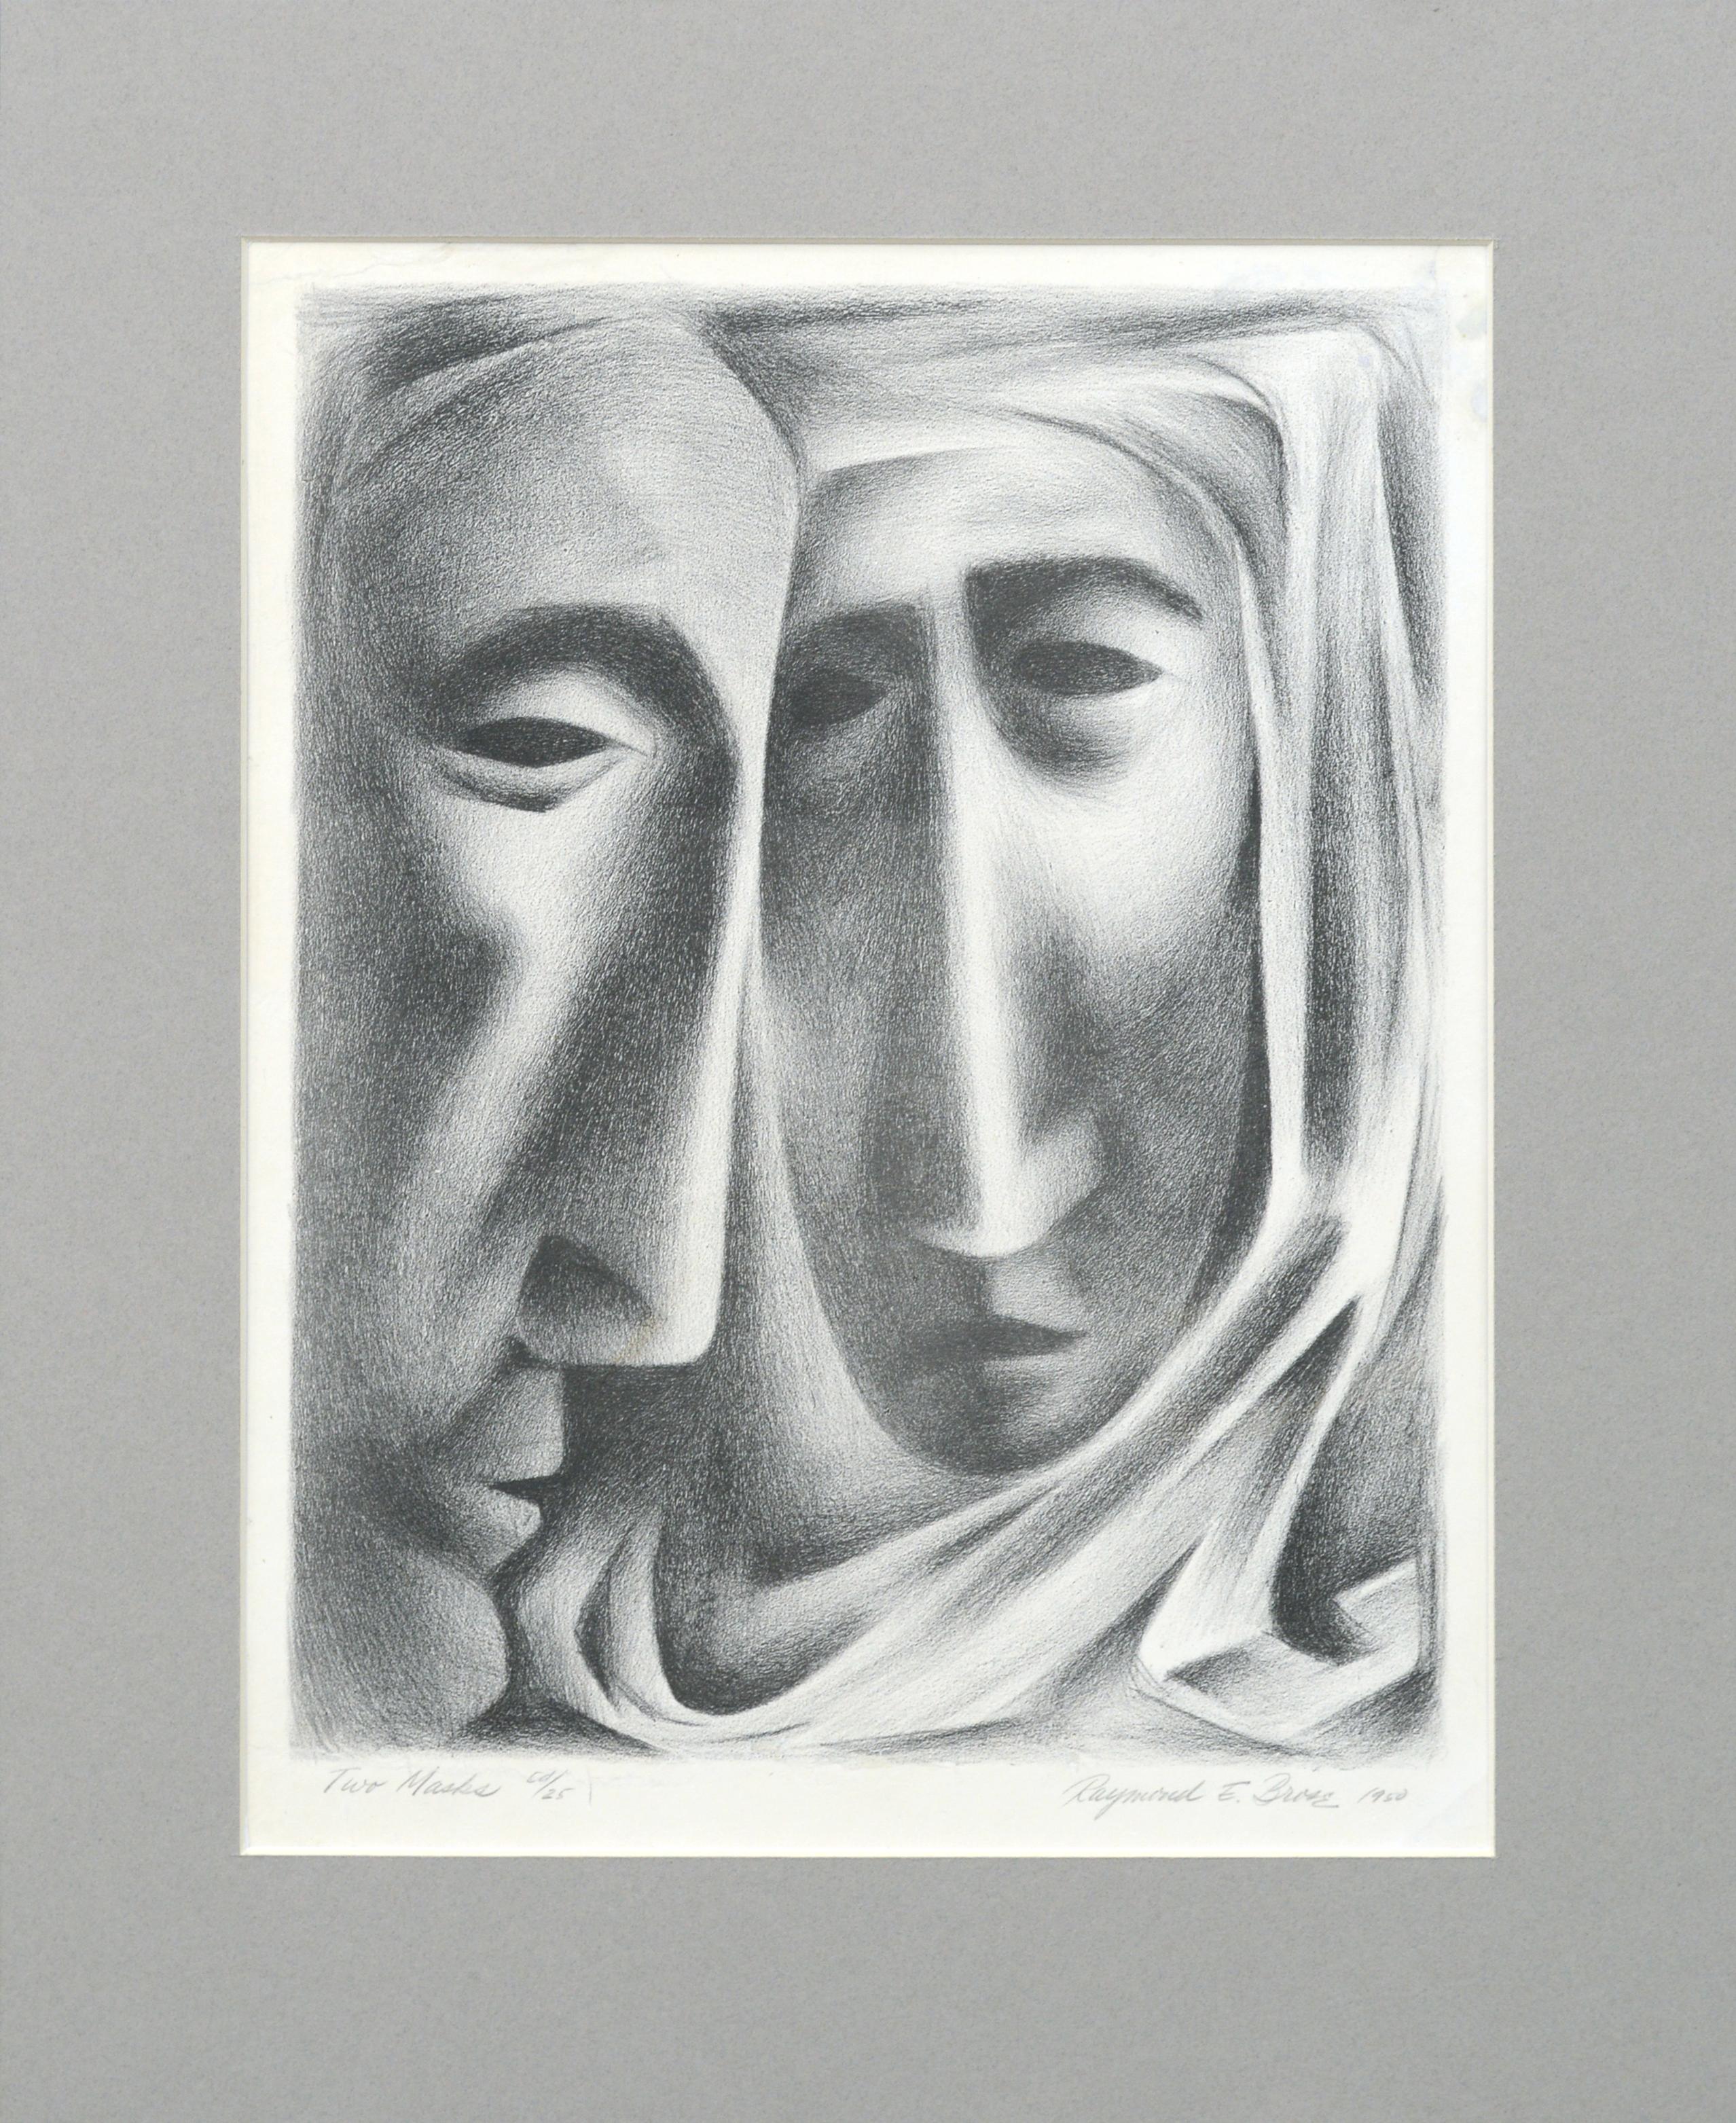 Raymond Edwin Brose Figurative Print - "Two Masks" Lithograph